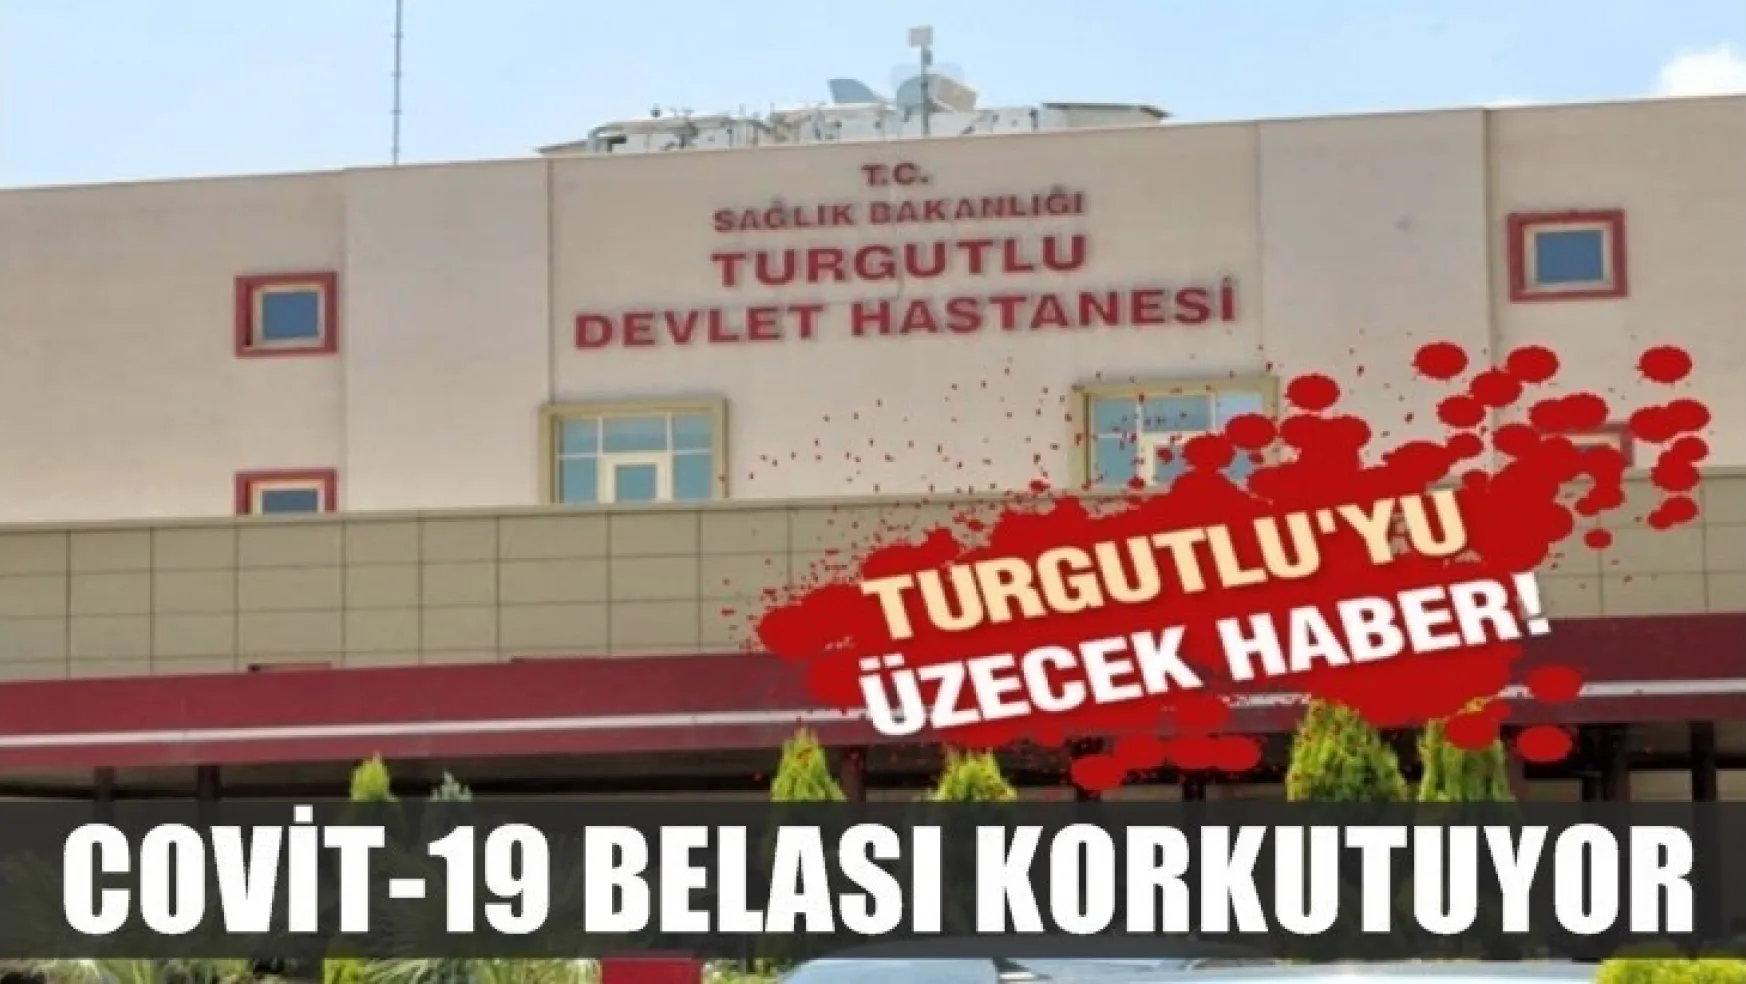 Turgutlu Devlet Hastanesinde COVİT-19 Belası Korkutuyor